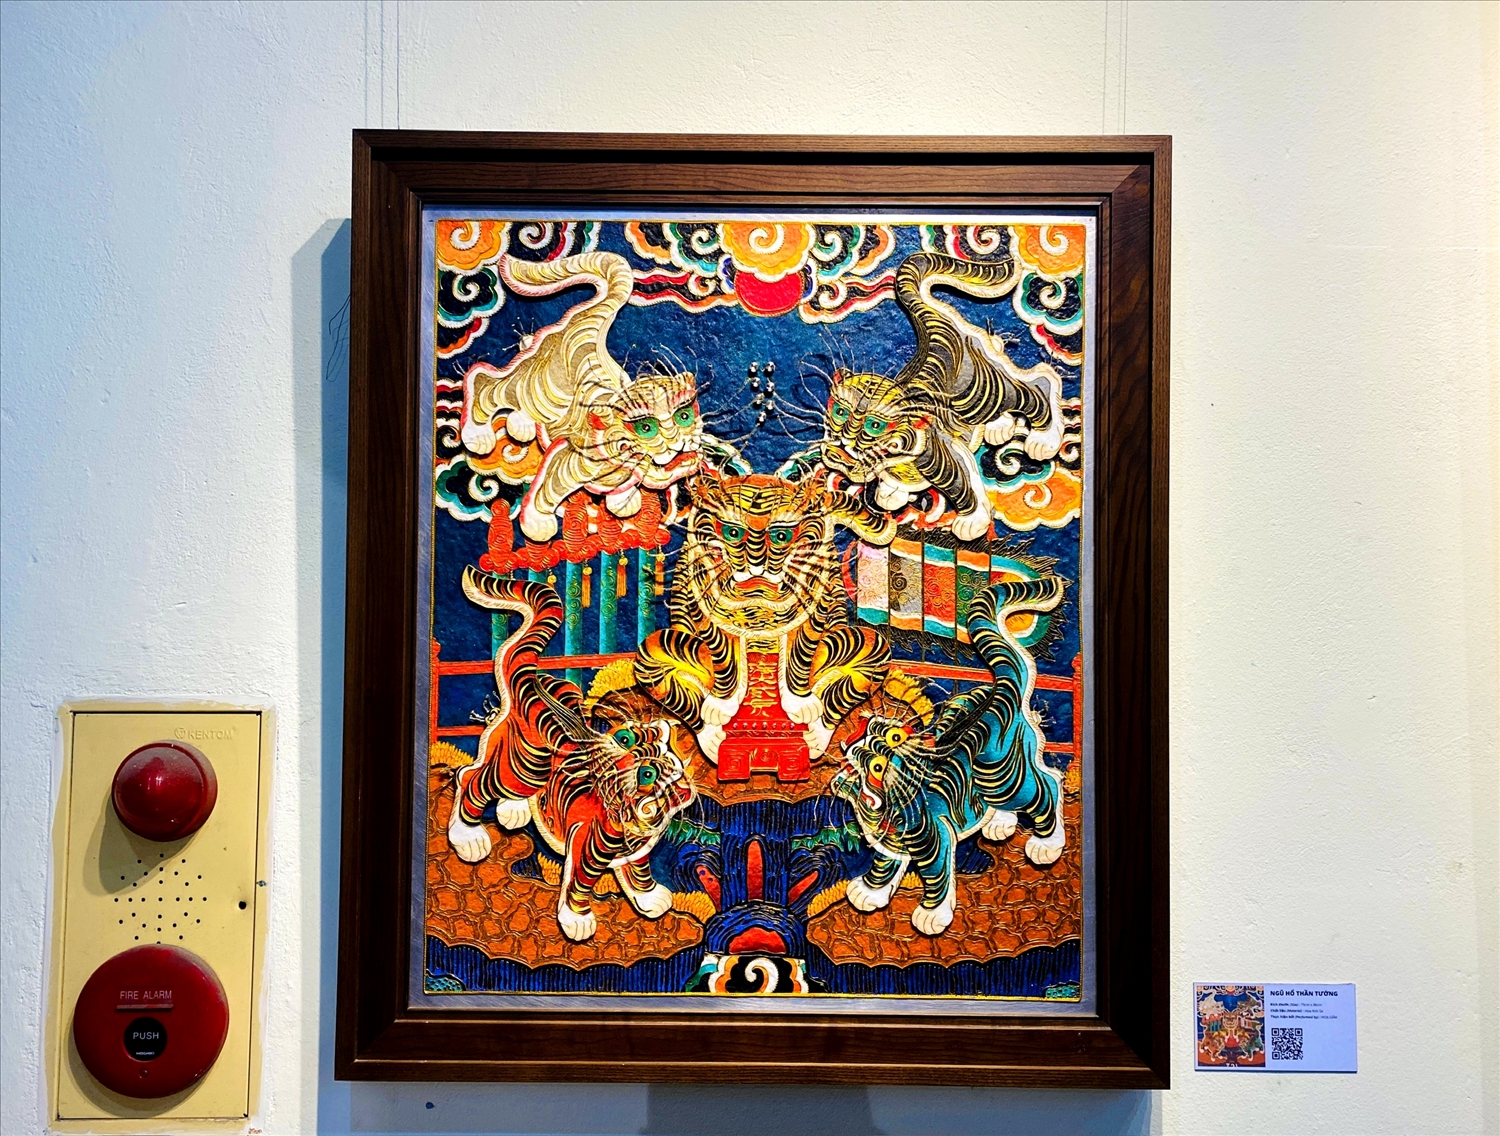 Bức tranh “Ngũ Hổ thần tướng” được thực hiện với nghệ thuật họa kim sa, toát lên vẻ oai nghiêm, đường bệ, sinh động và cuốn hút với màu sắc rực rỡ, nổi bật.